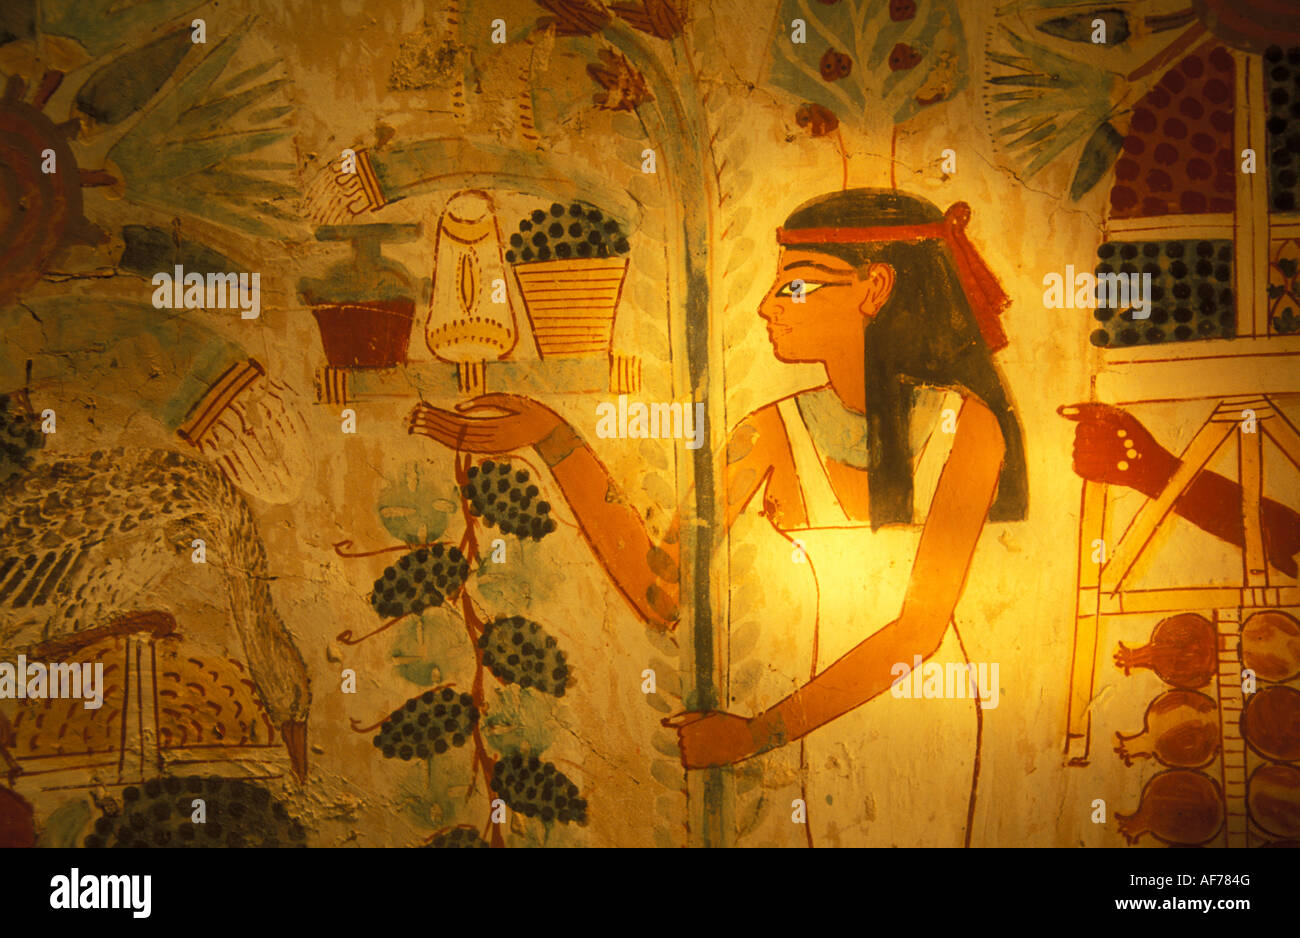 Egitto Luxor, West Bank, Valle dei nobili, dipinto sul muro nella tomba di Nakht, scene di vita quotidiana Foto Stock